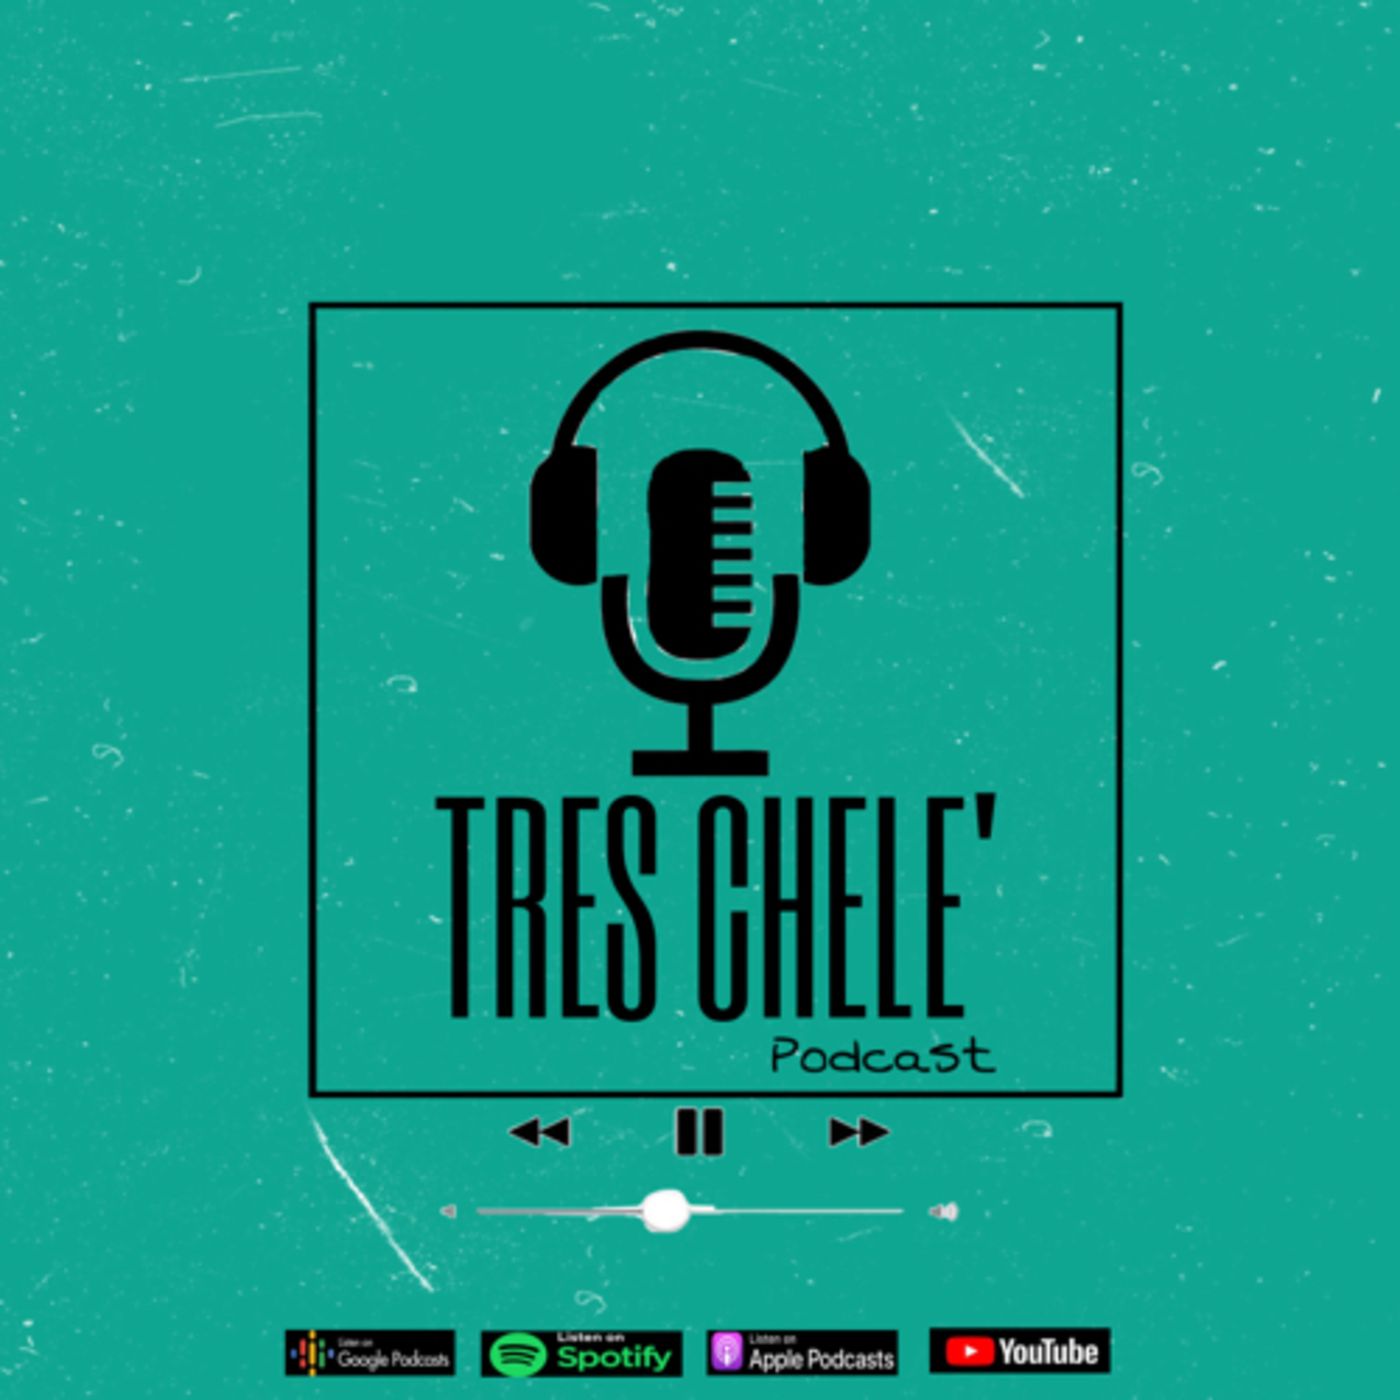 Tres Chele Podcast